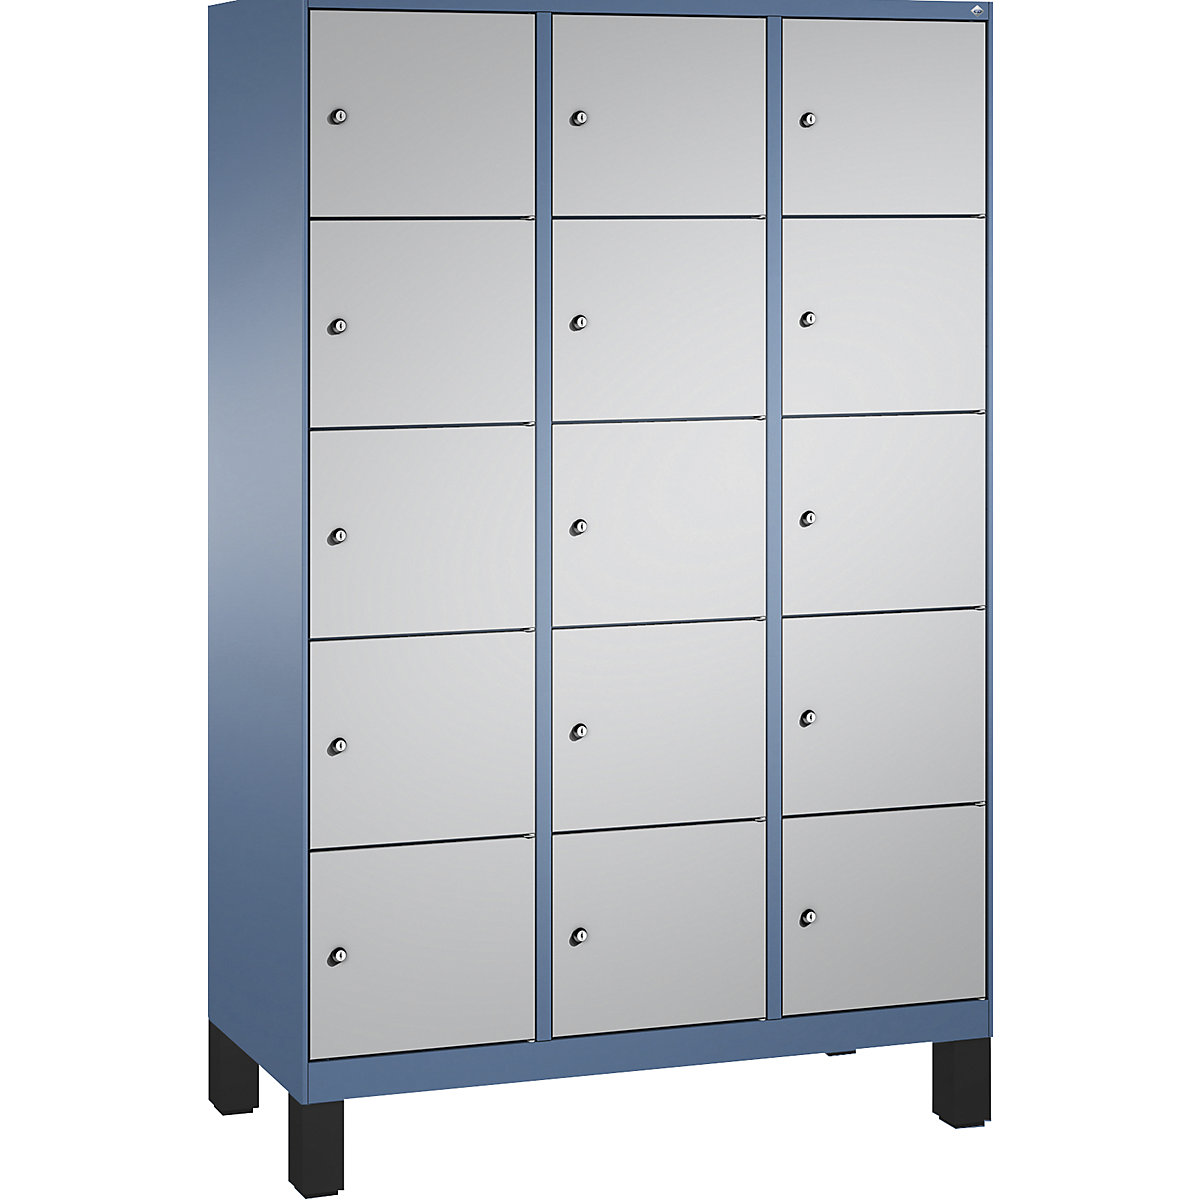 Armoire à casiers sur pieds EVOLO – C+P, 3 compartiments, 5 casiers chacun, largeur compartiments 400 mm, bleu distant / aluminium-10